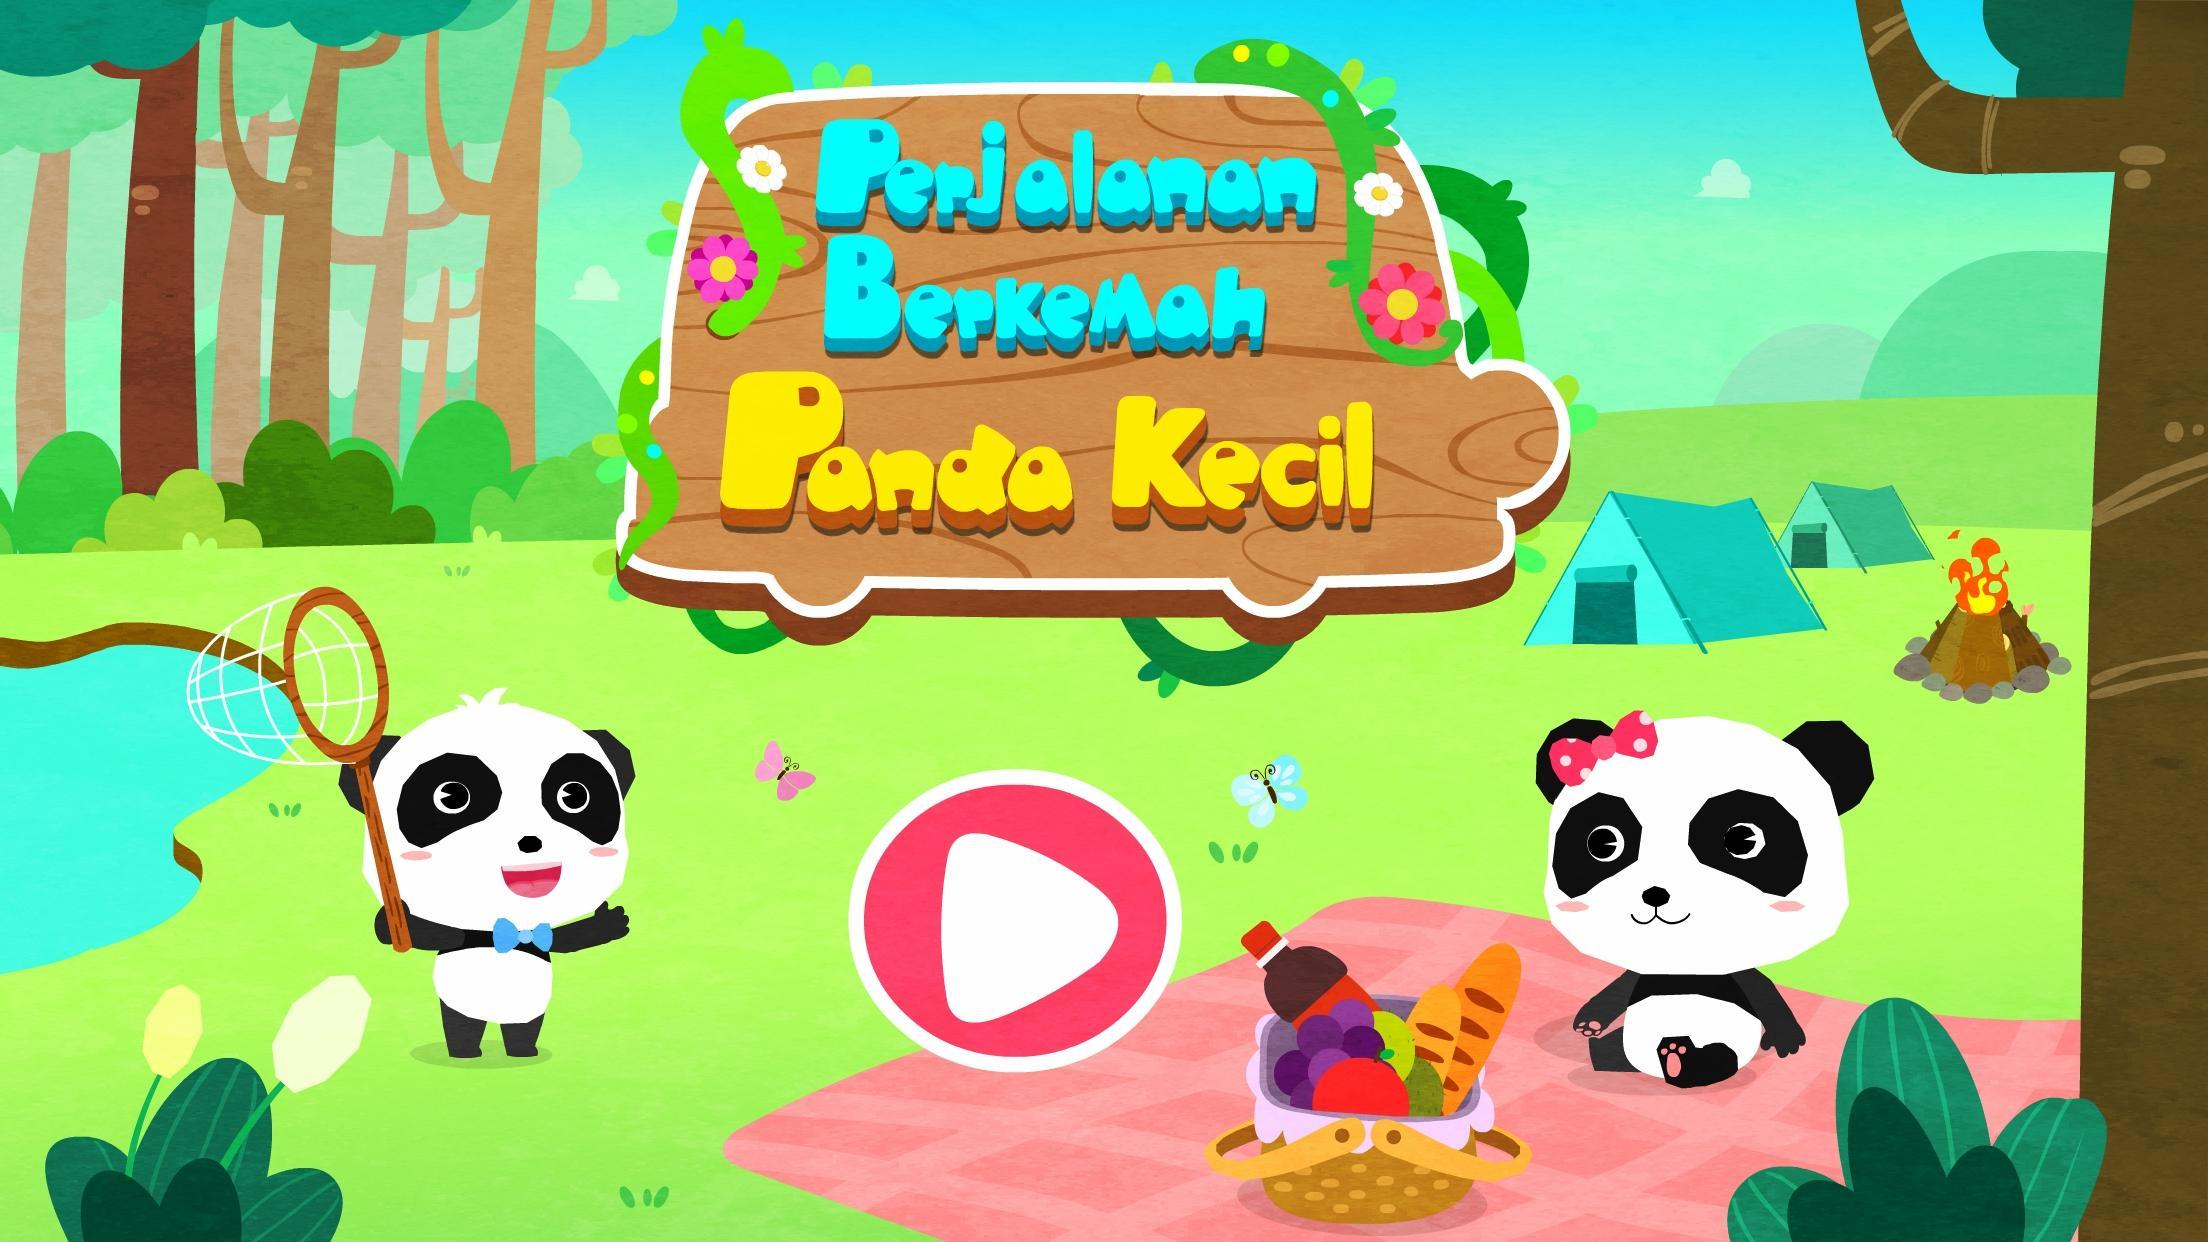 Perjalanan Kamping Panda Kecil for Android - APK Download